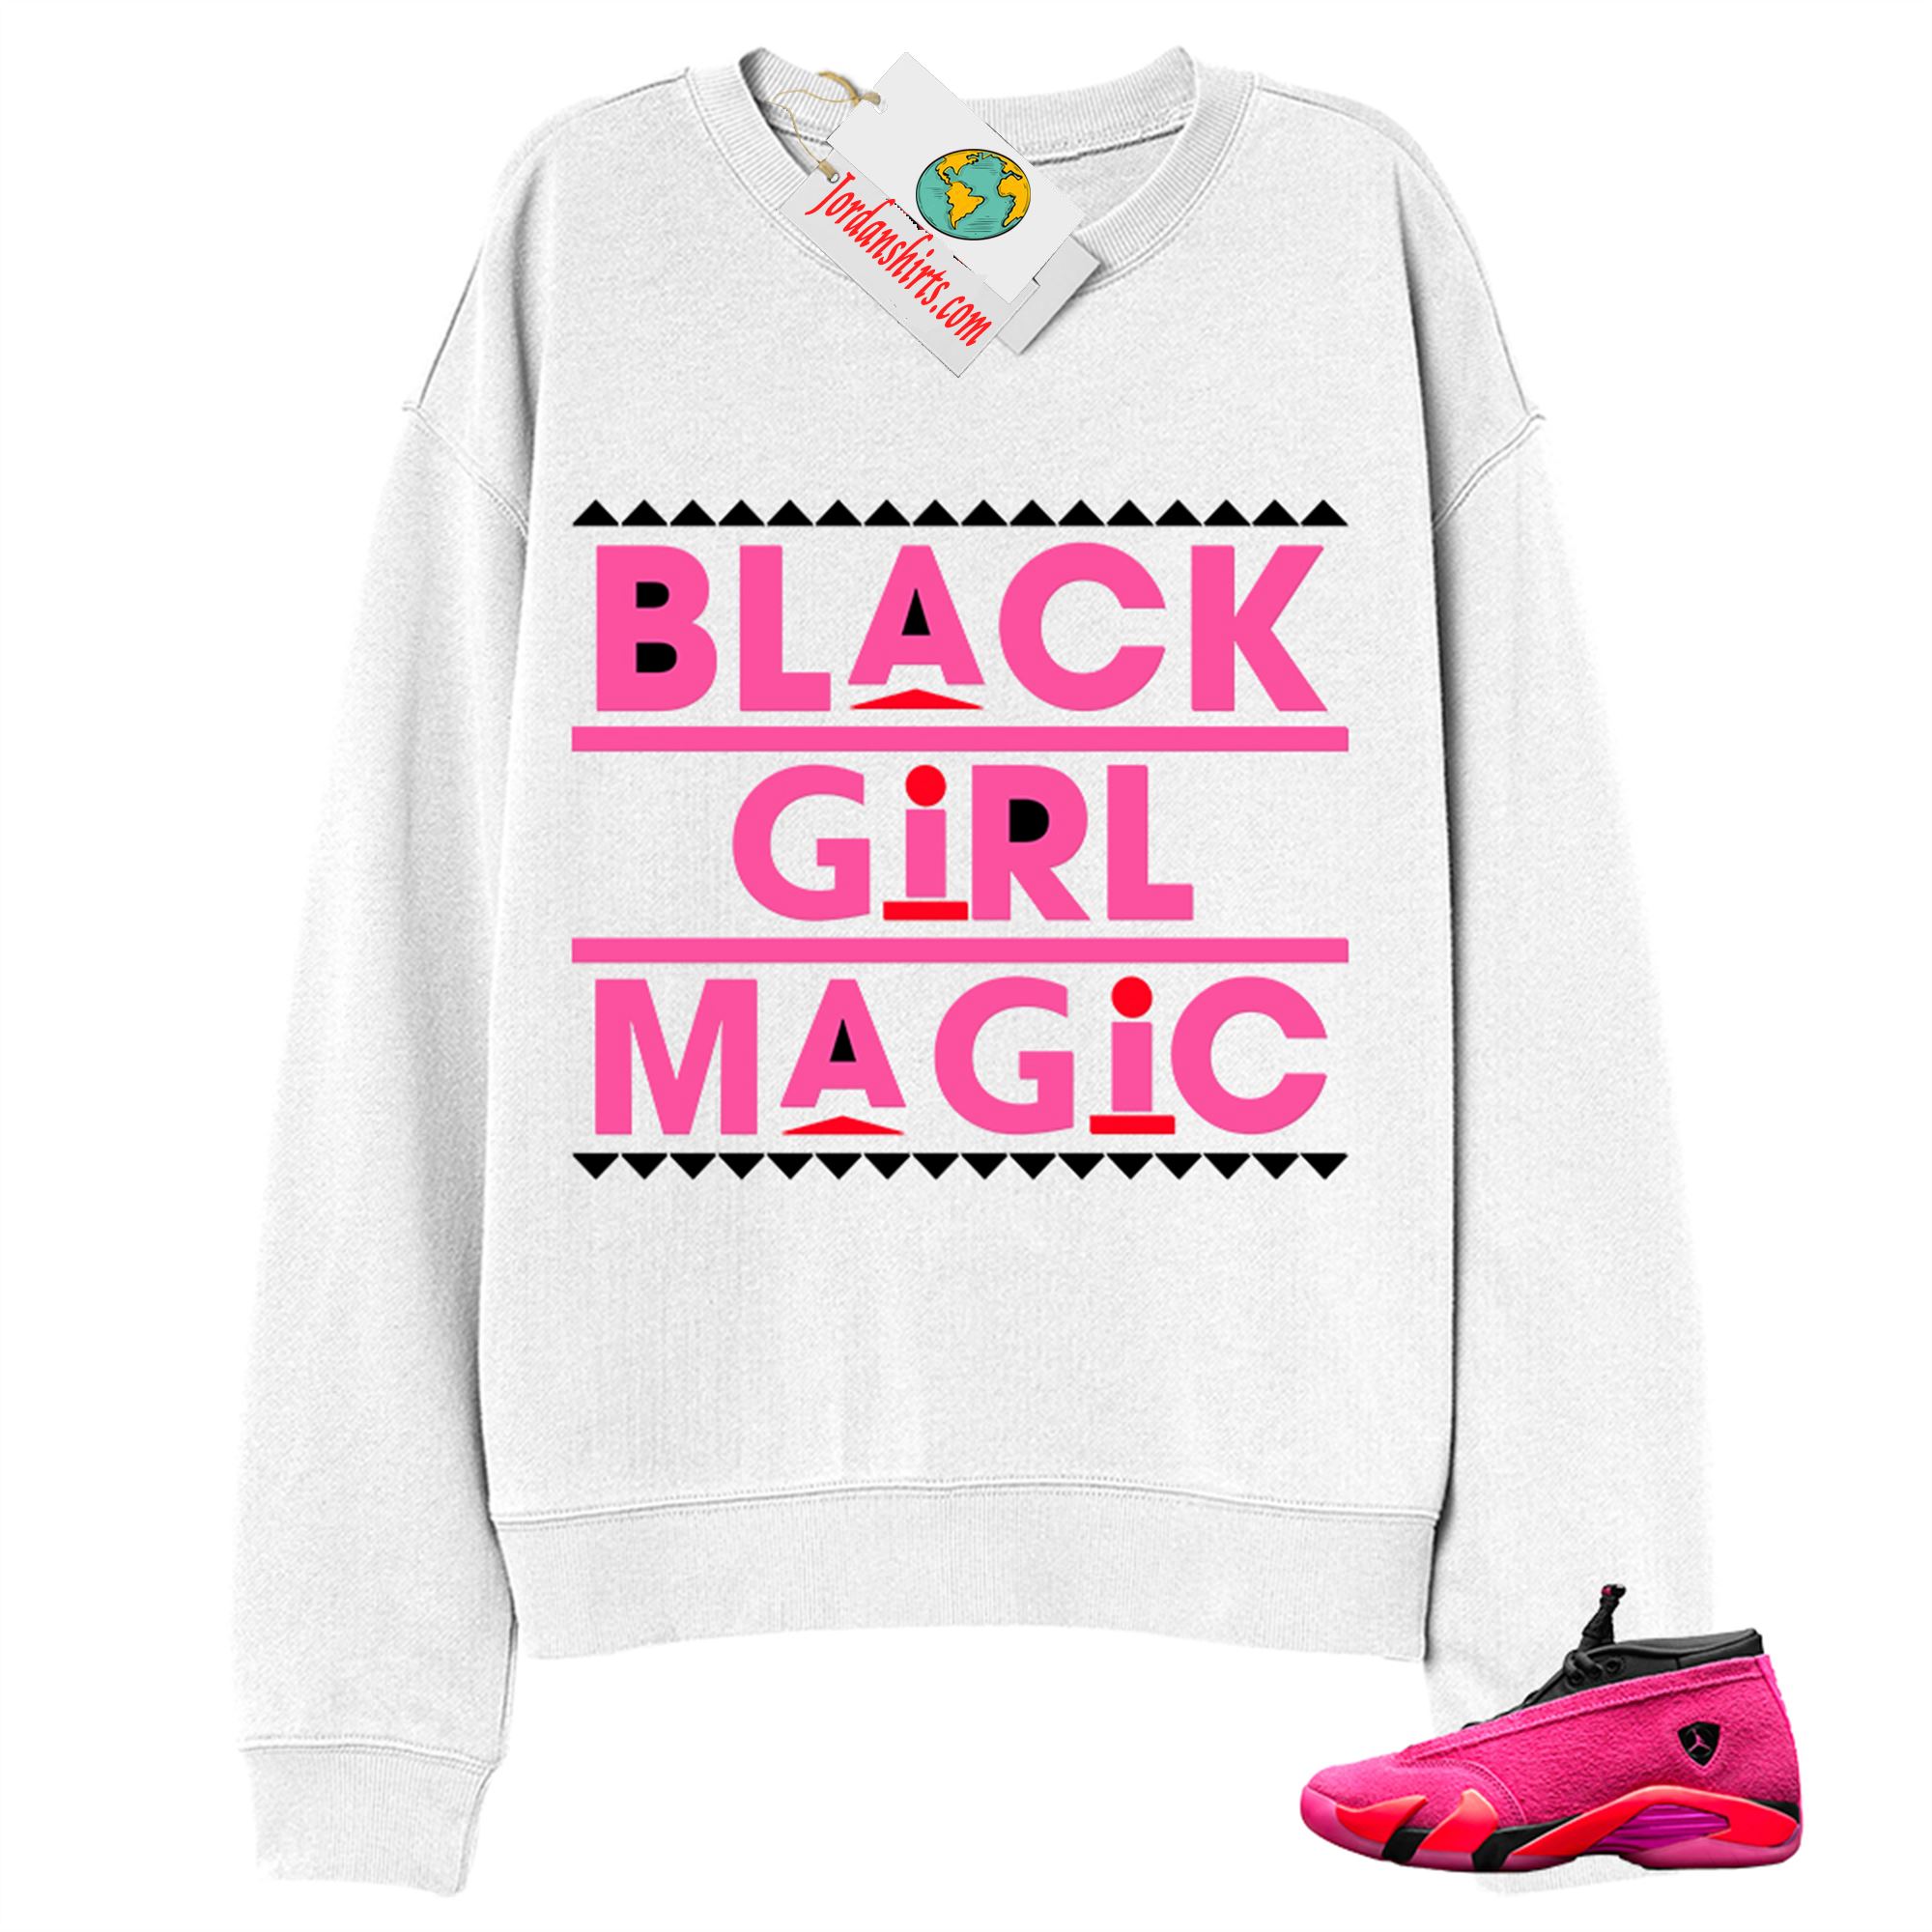 Jordan 14 Sweatshirt, Black Girl Magic White Sweatshirt Air Jordan 14 Wmns Shocking Pink 14s Size Up To 5xl